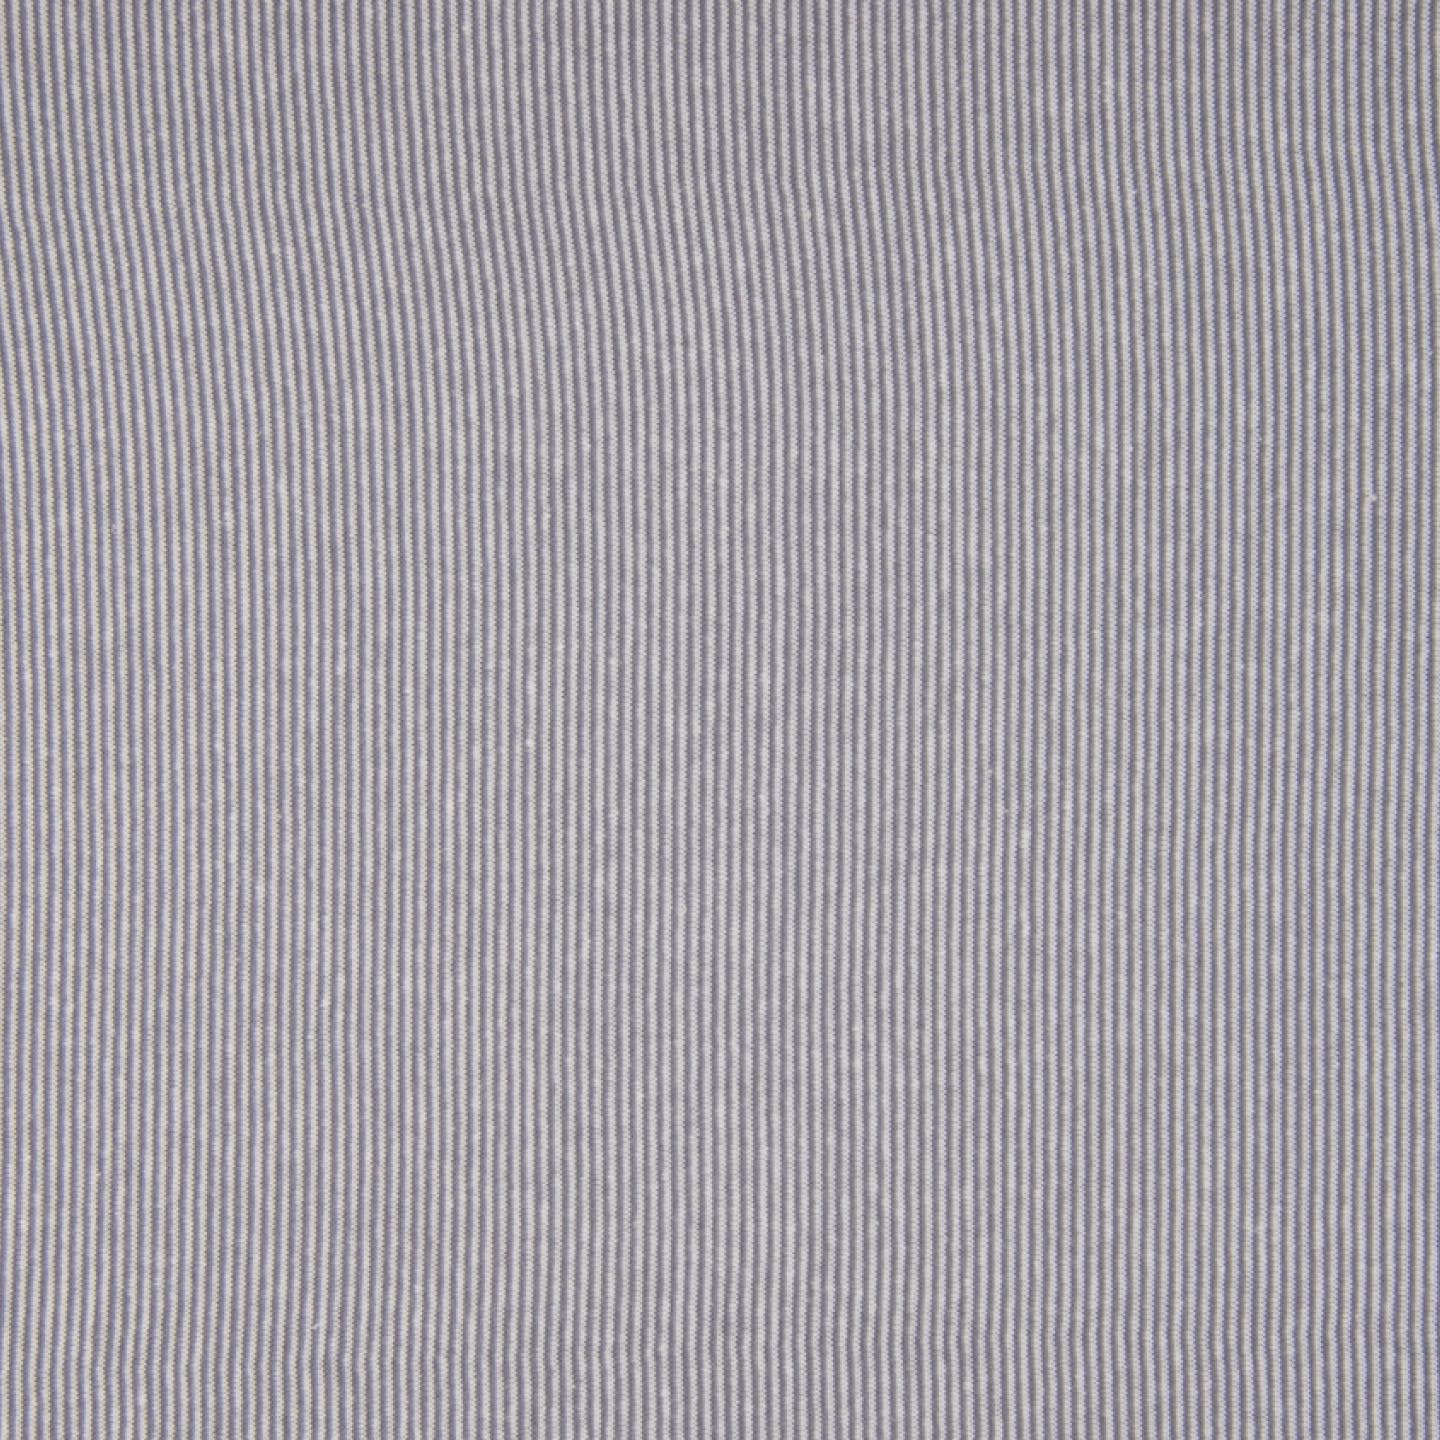 Ringelbündchen grau-weiß